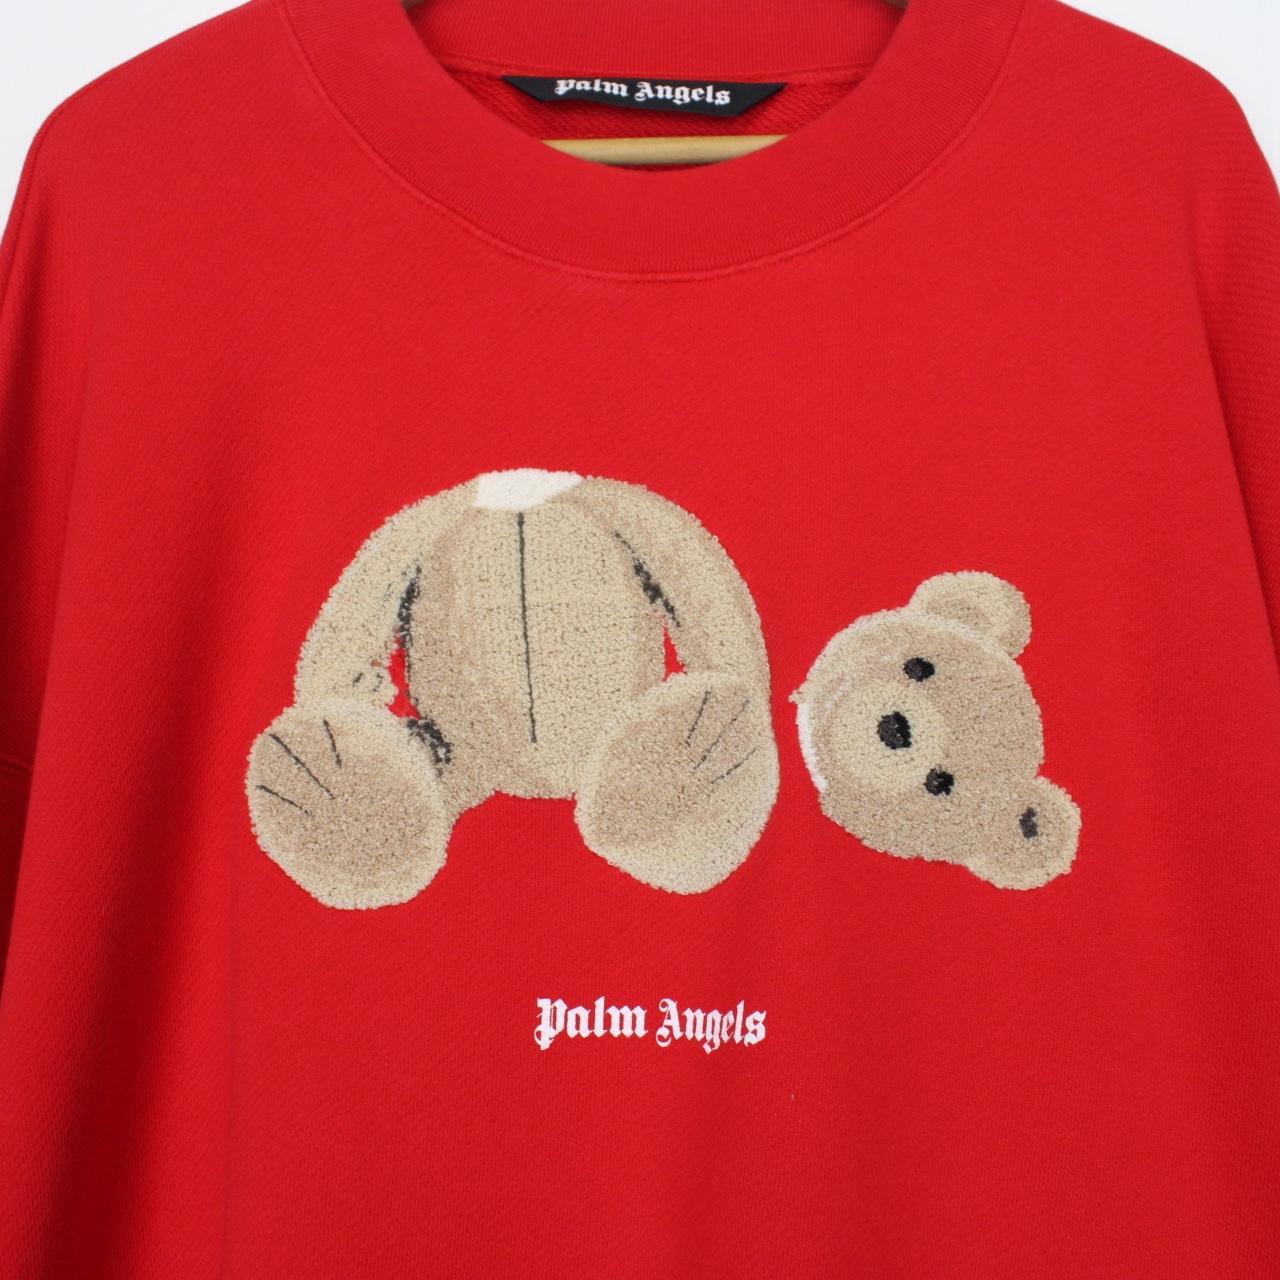 Palm angels teddy bear hoodie. RRP £560. Size Large. - Depop